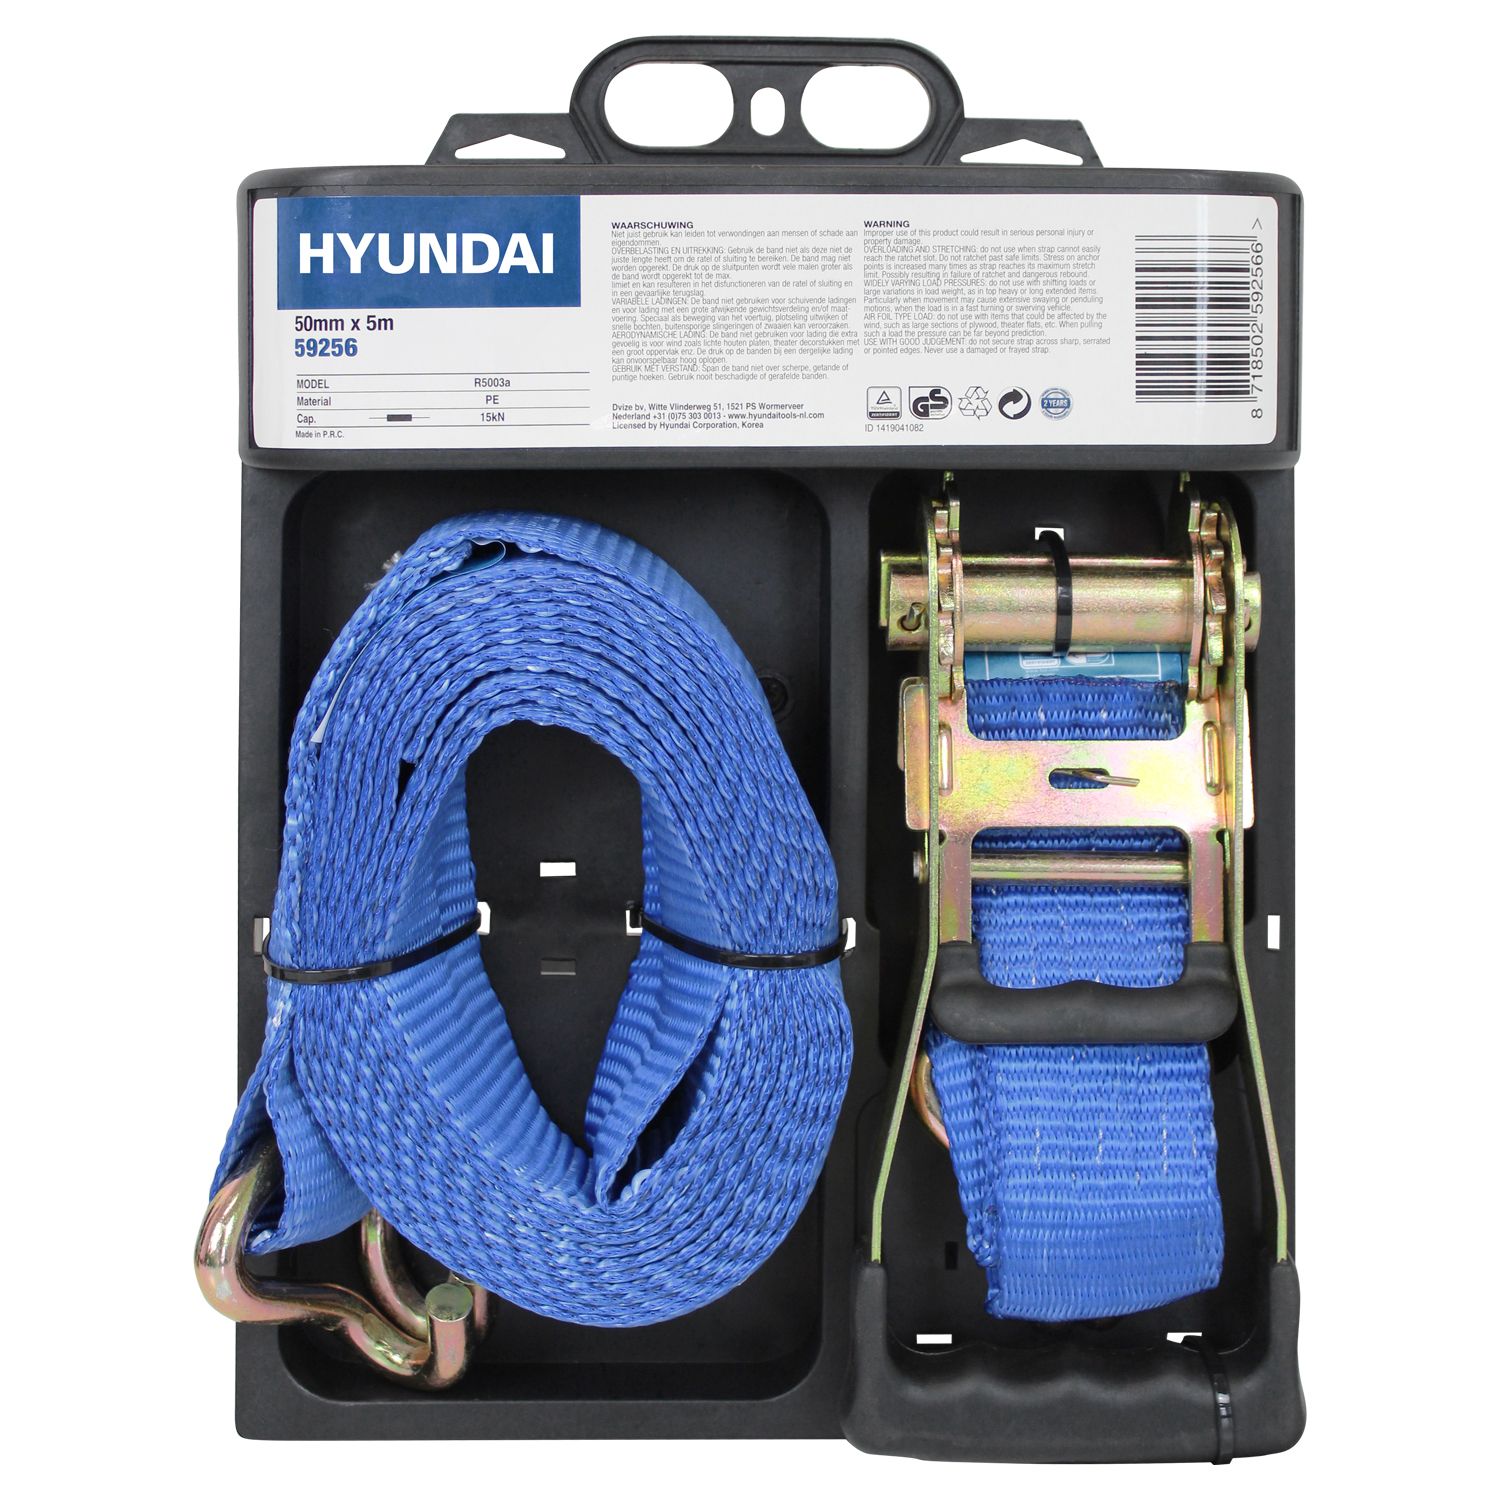 Hyundai spanband met ratel 50mmx5m